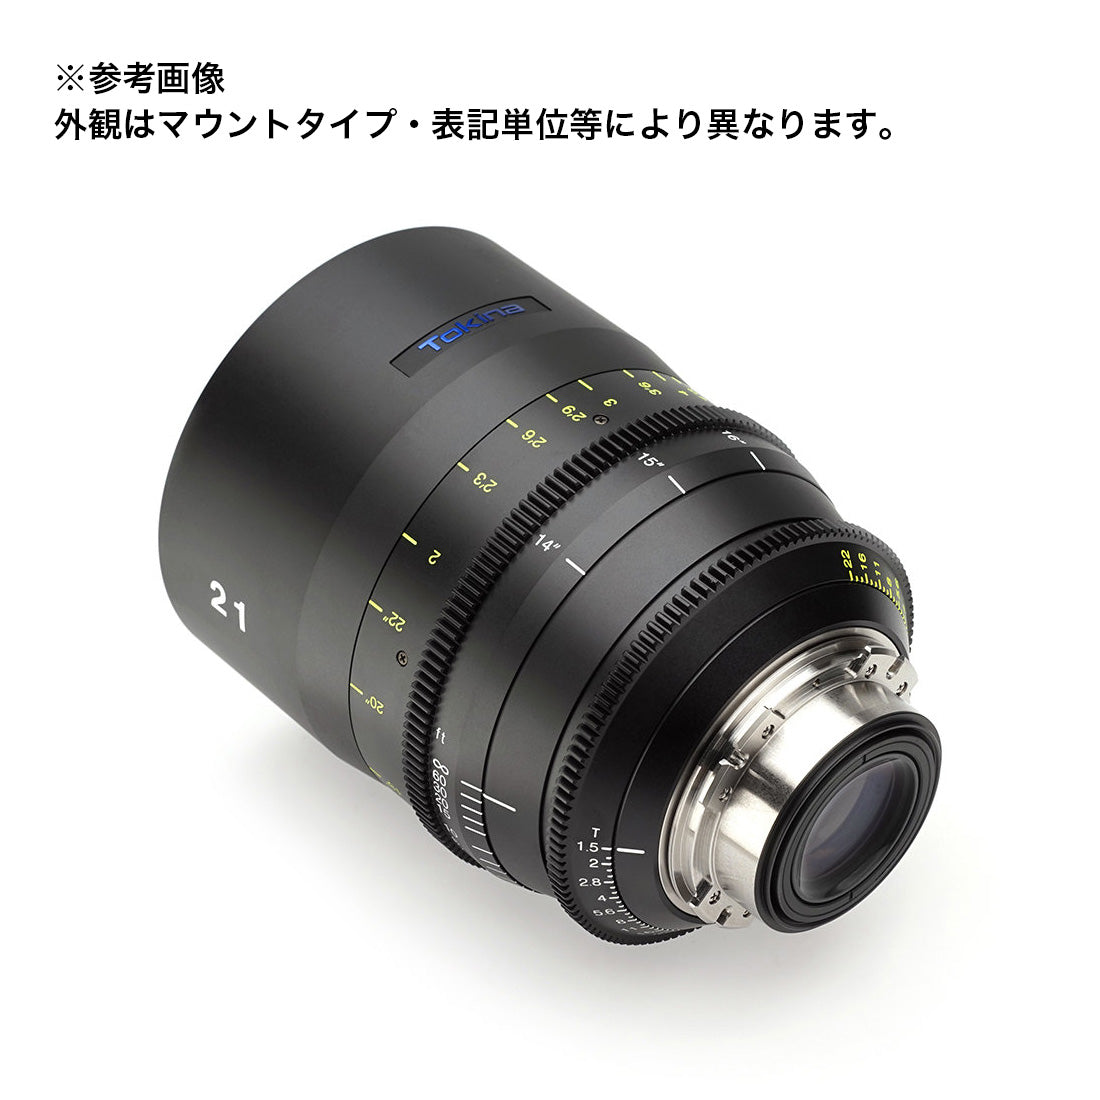 Tokina(トキナー) シネマプライムレンズ VISTA 21mm T1.5CINEMA LENS EFマウント メートル表記 [264243]